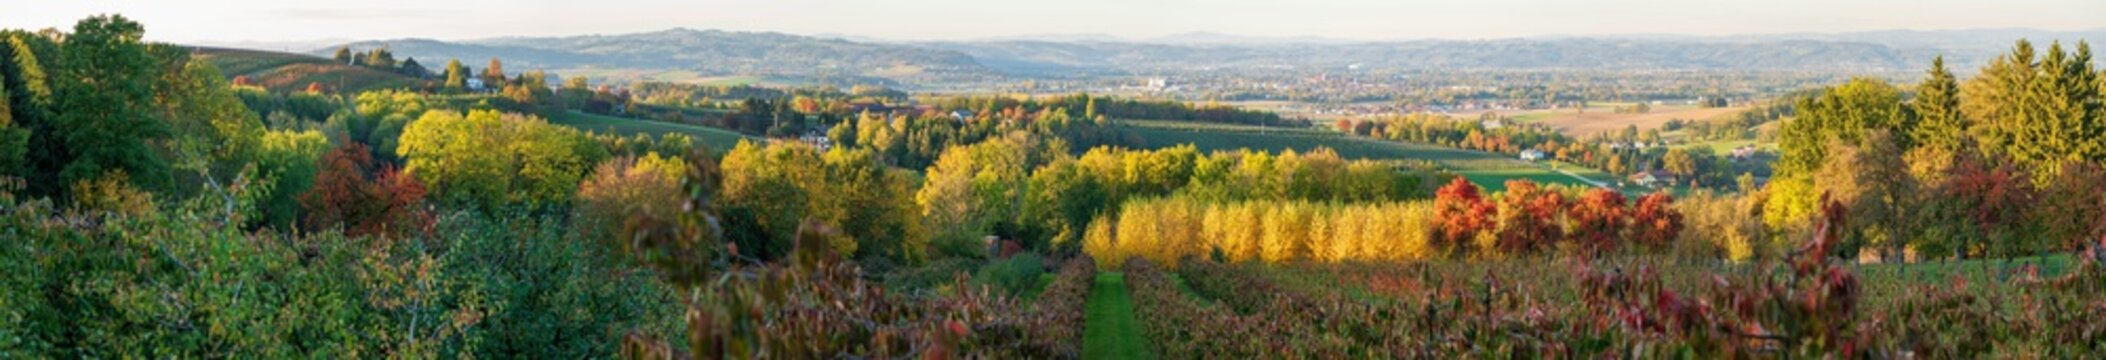 Obstplantage in Scharten in Oberösterreich mit Blick in das Eferdinger Becken im Herbst Panorama